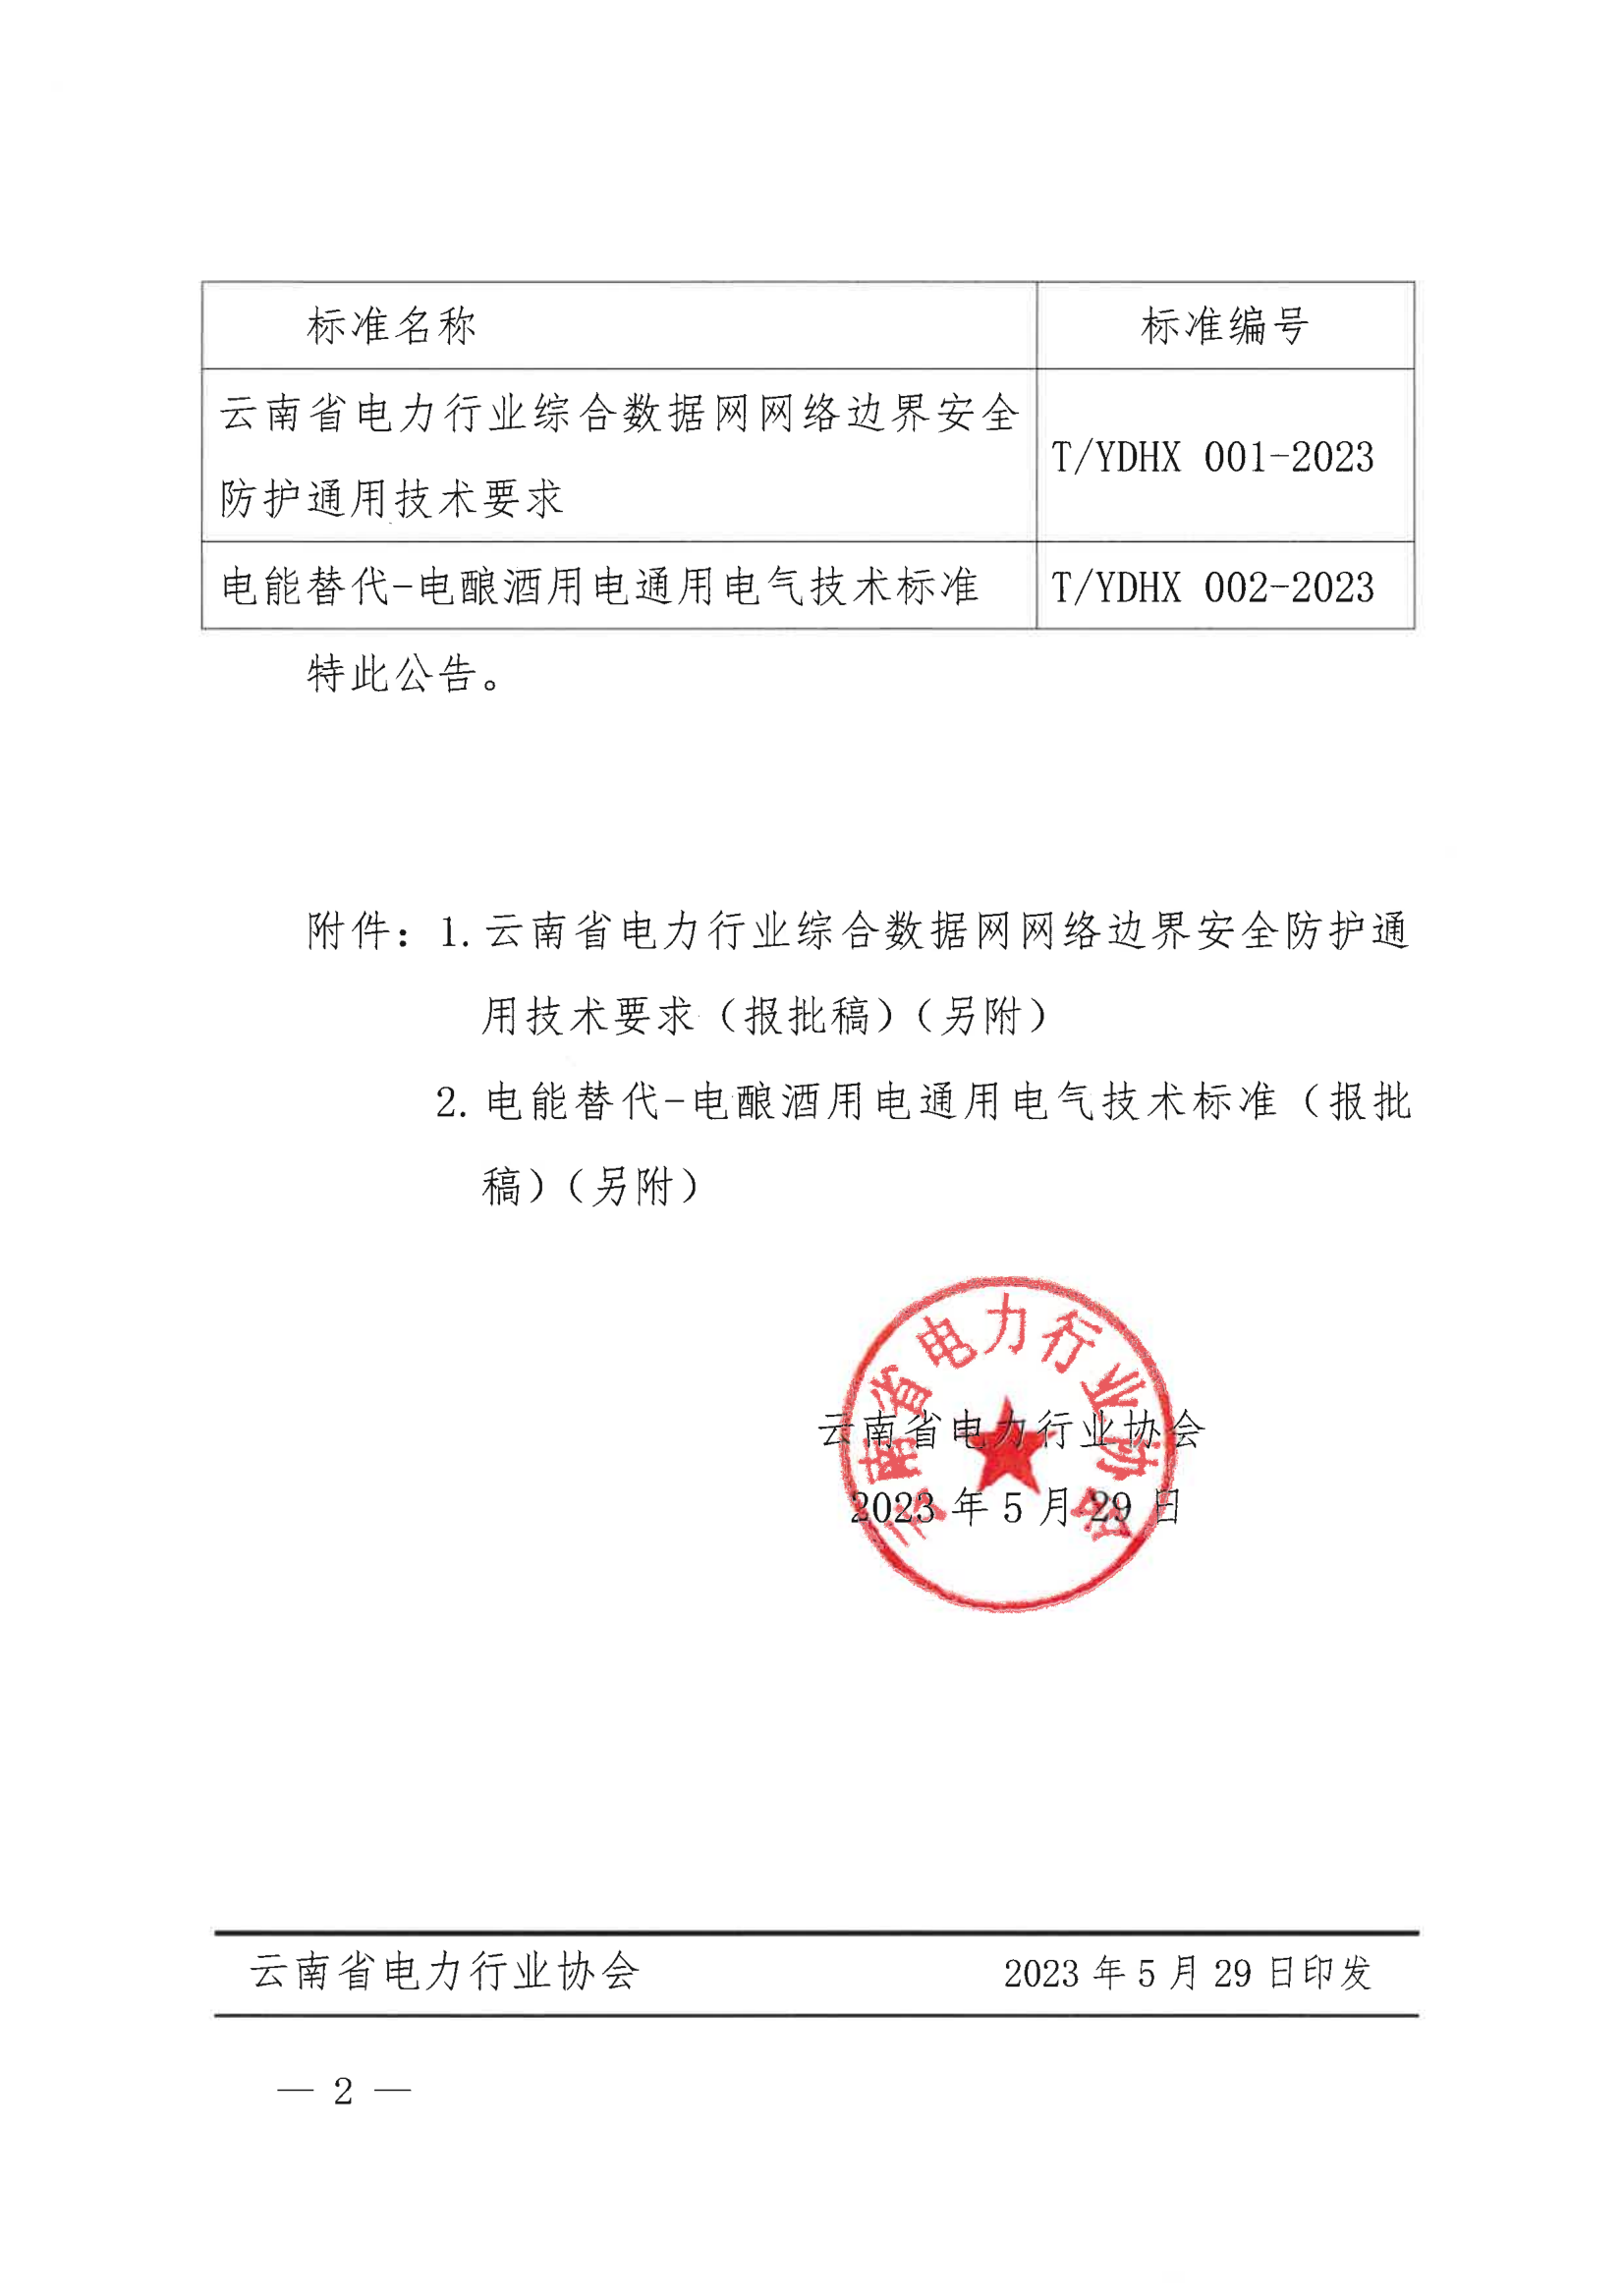 关于发布《云南省电力行业综合数据网网络边界安全防护通用技术要求》等2项团体标准公告_2.png